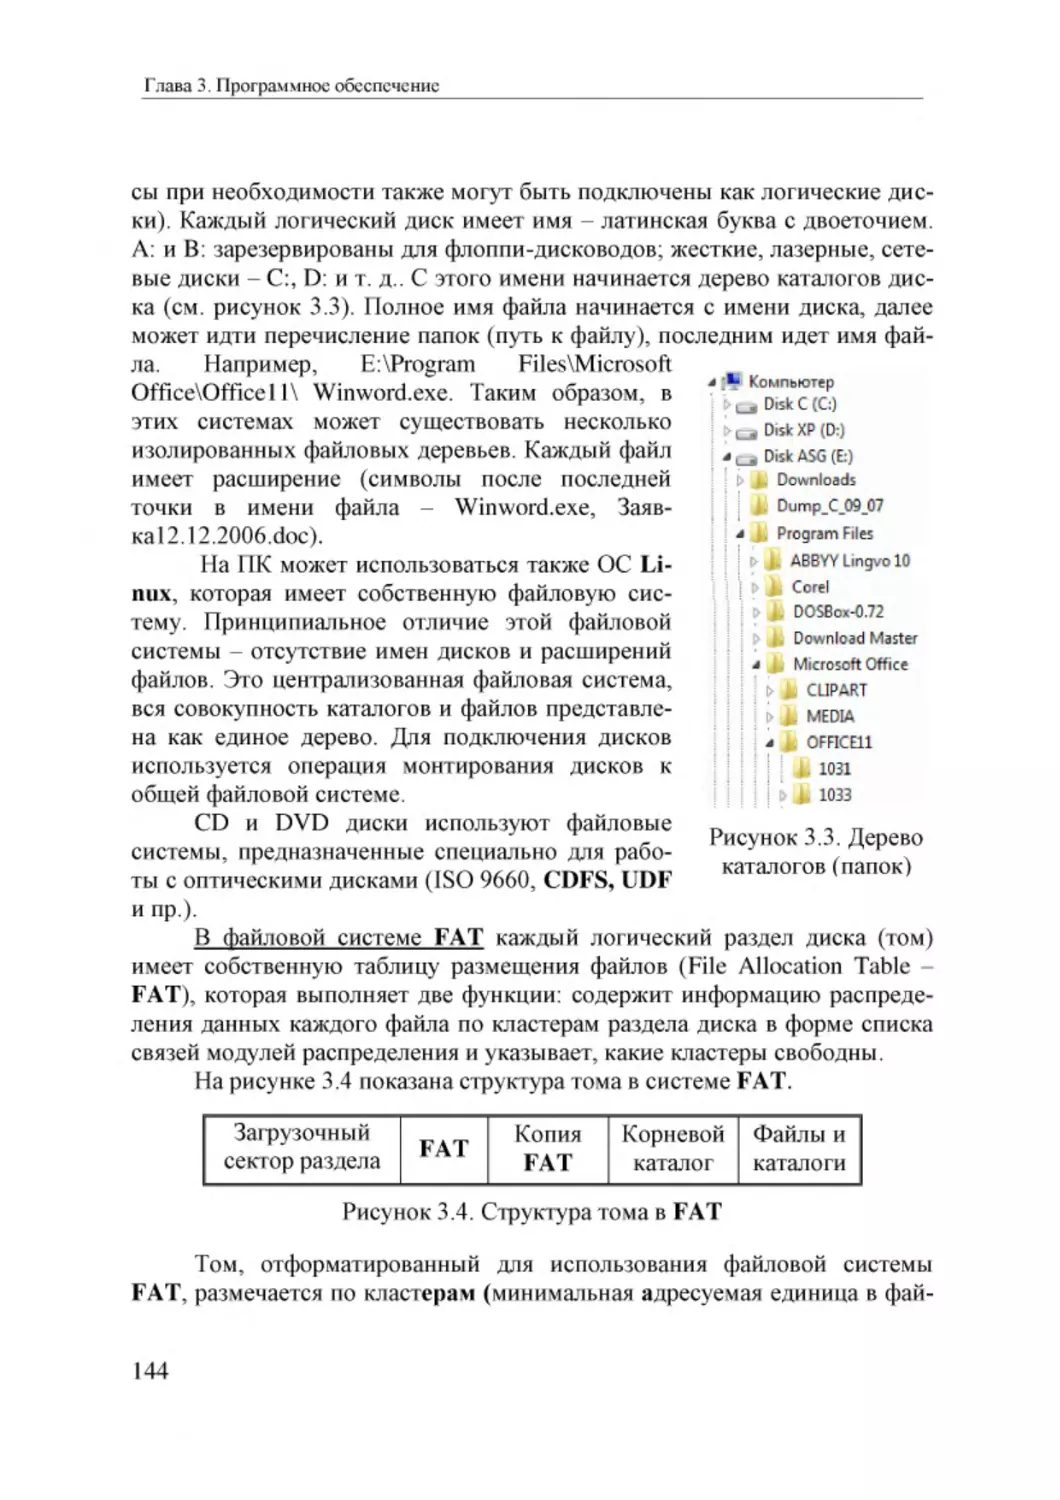 Informatika_Uchebnik_dlya_vuzov_2010 144